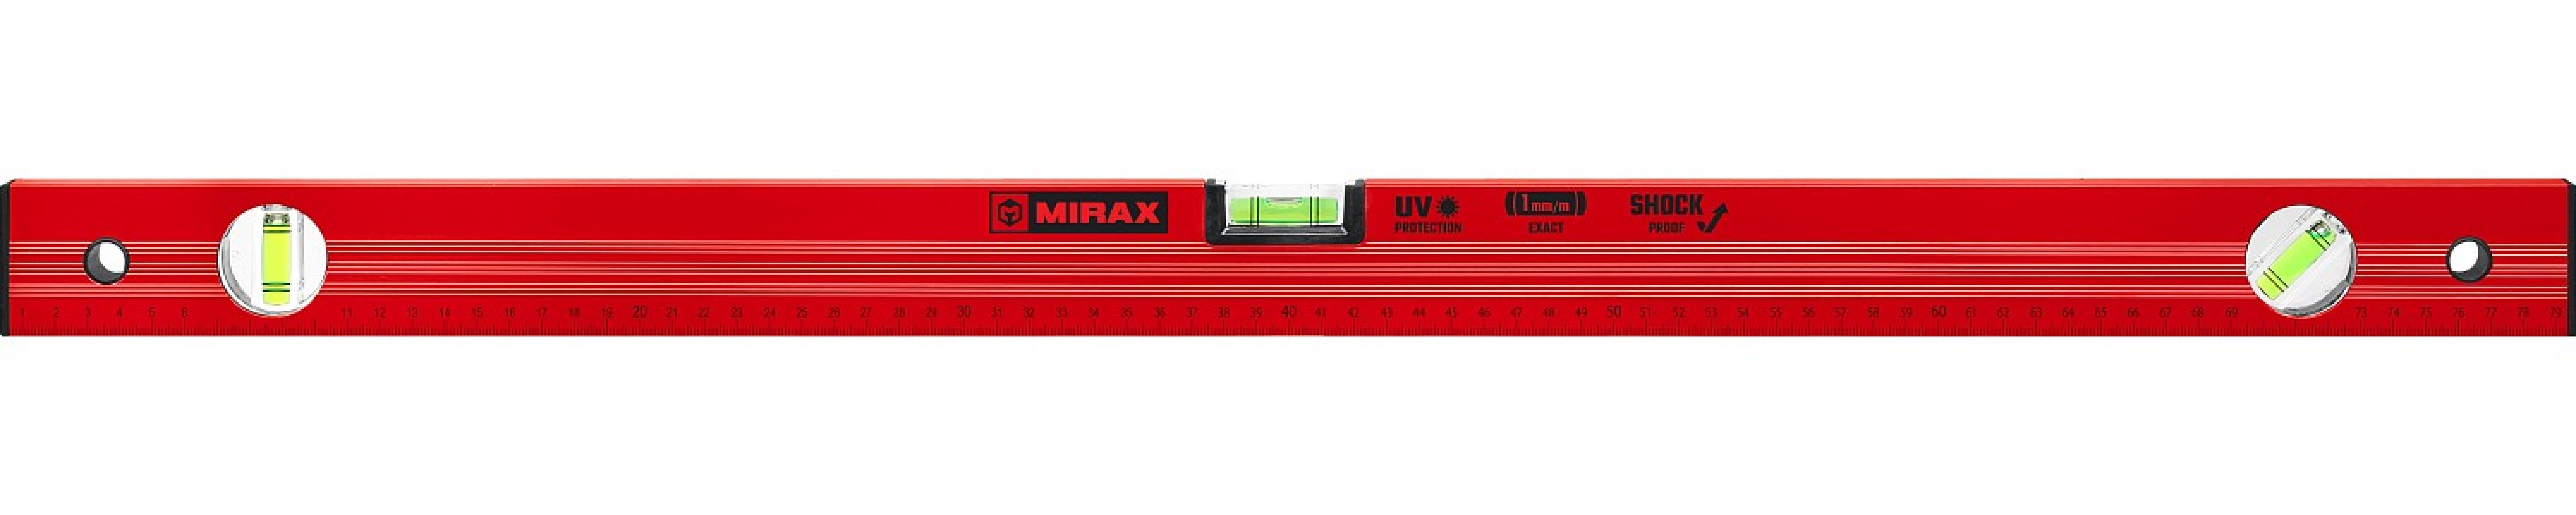   MIRAX 800  (34610-080)